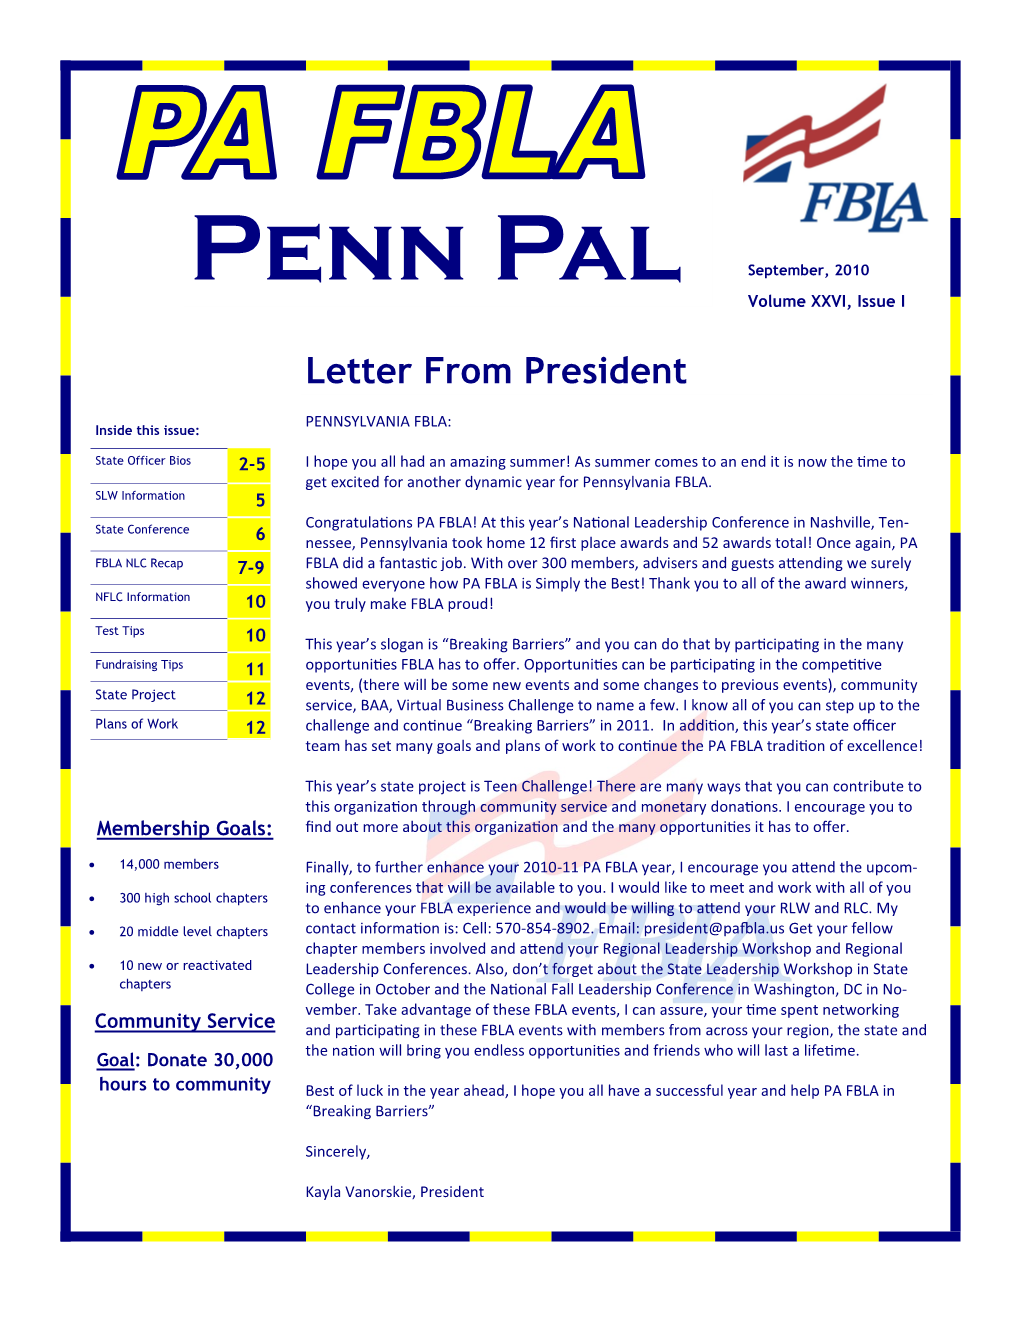 Penn Pal September, 2010 Volume XXVI, Issue I